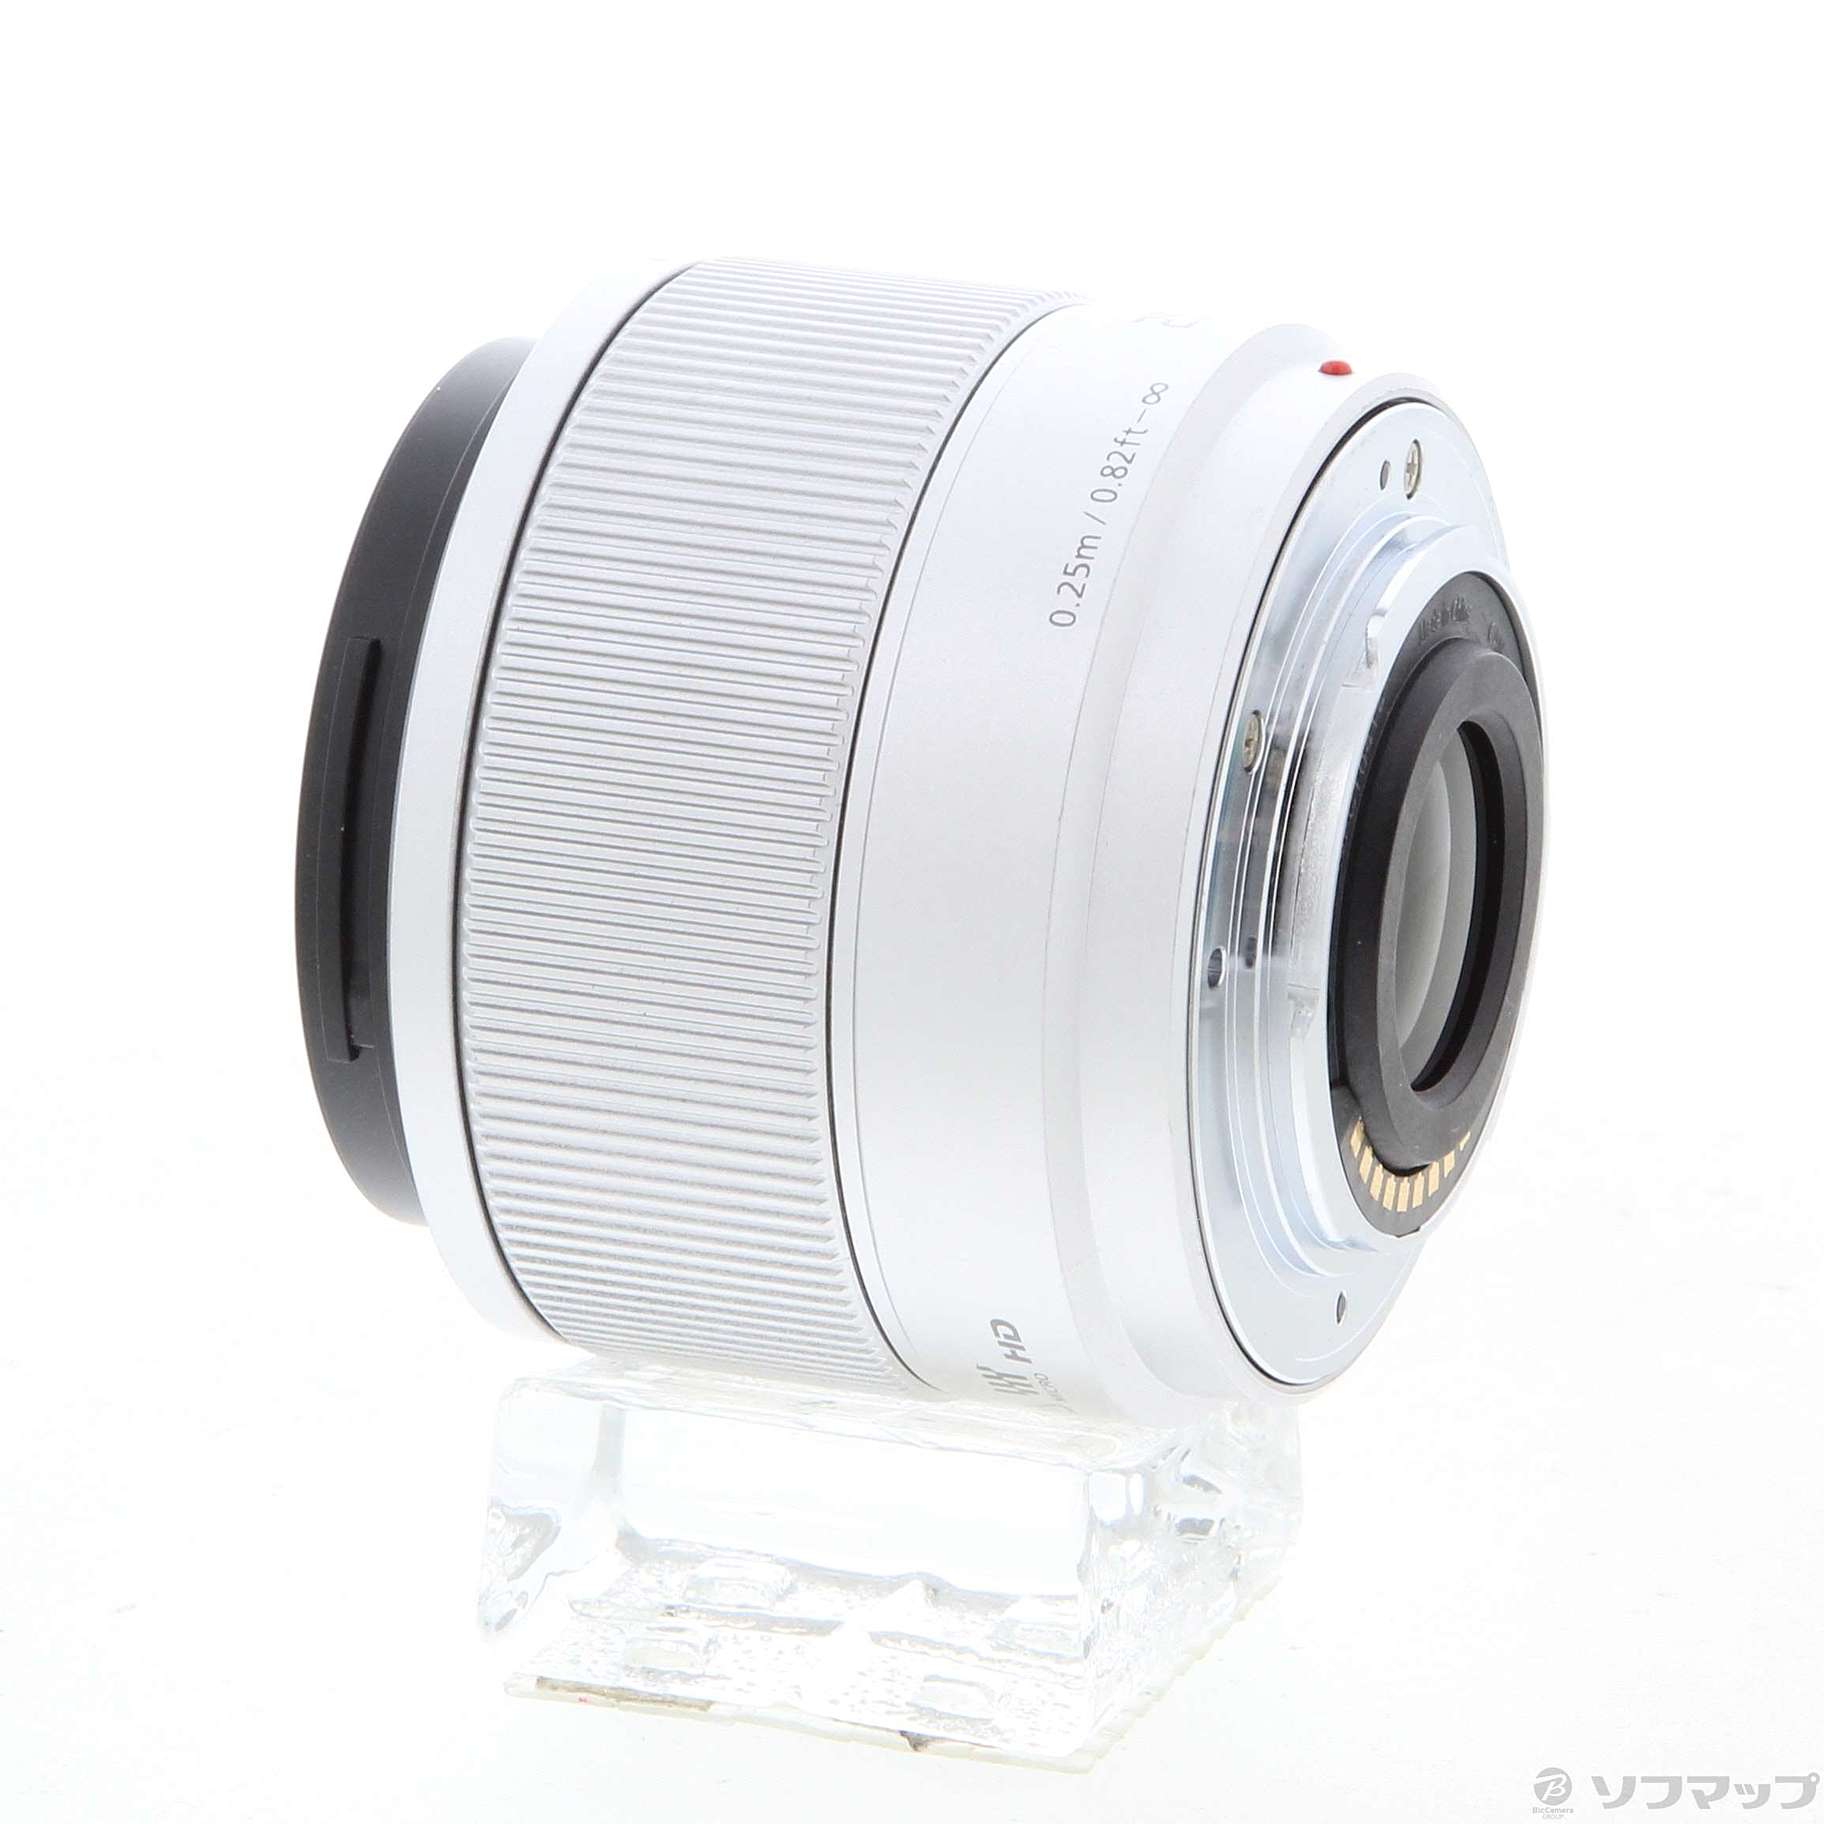 Panasonic LUMIX G 25mm/F1.7 ASPH. シルバー - レンズ(単焦点)